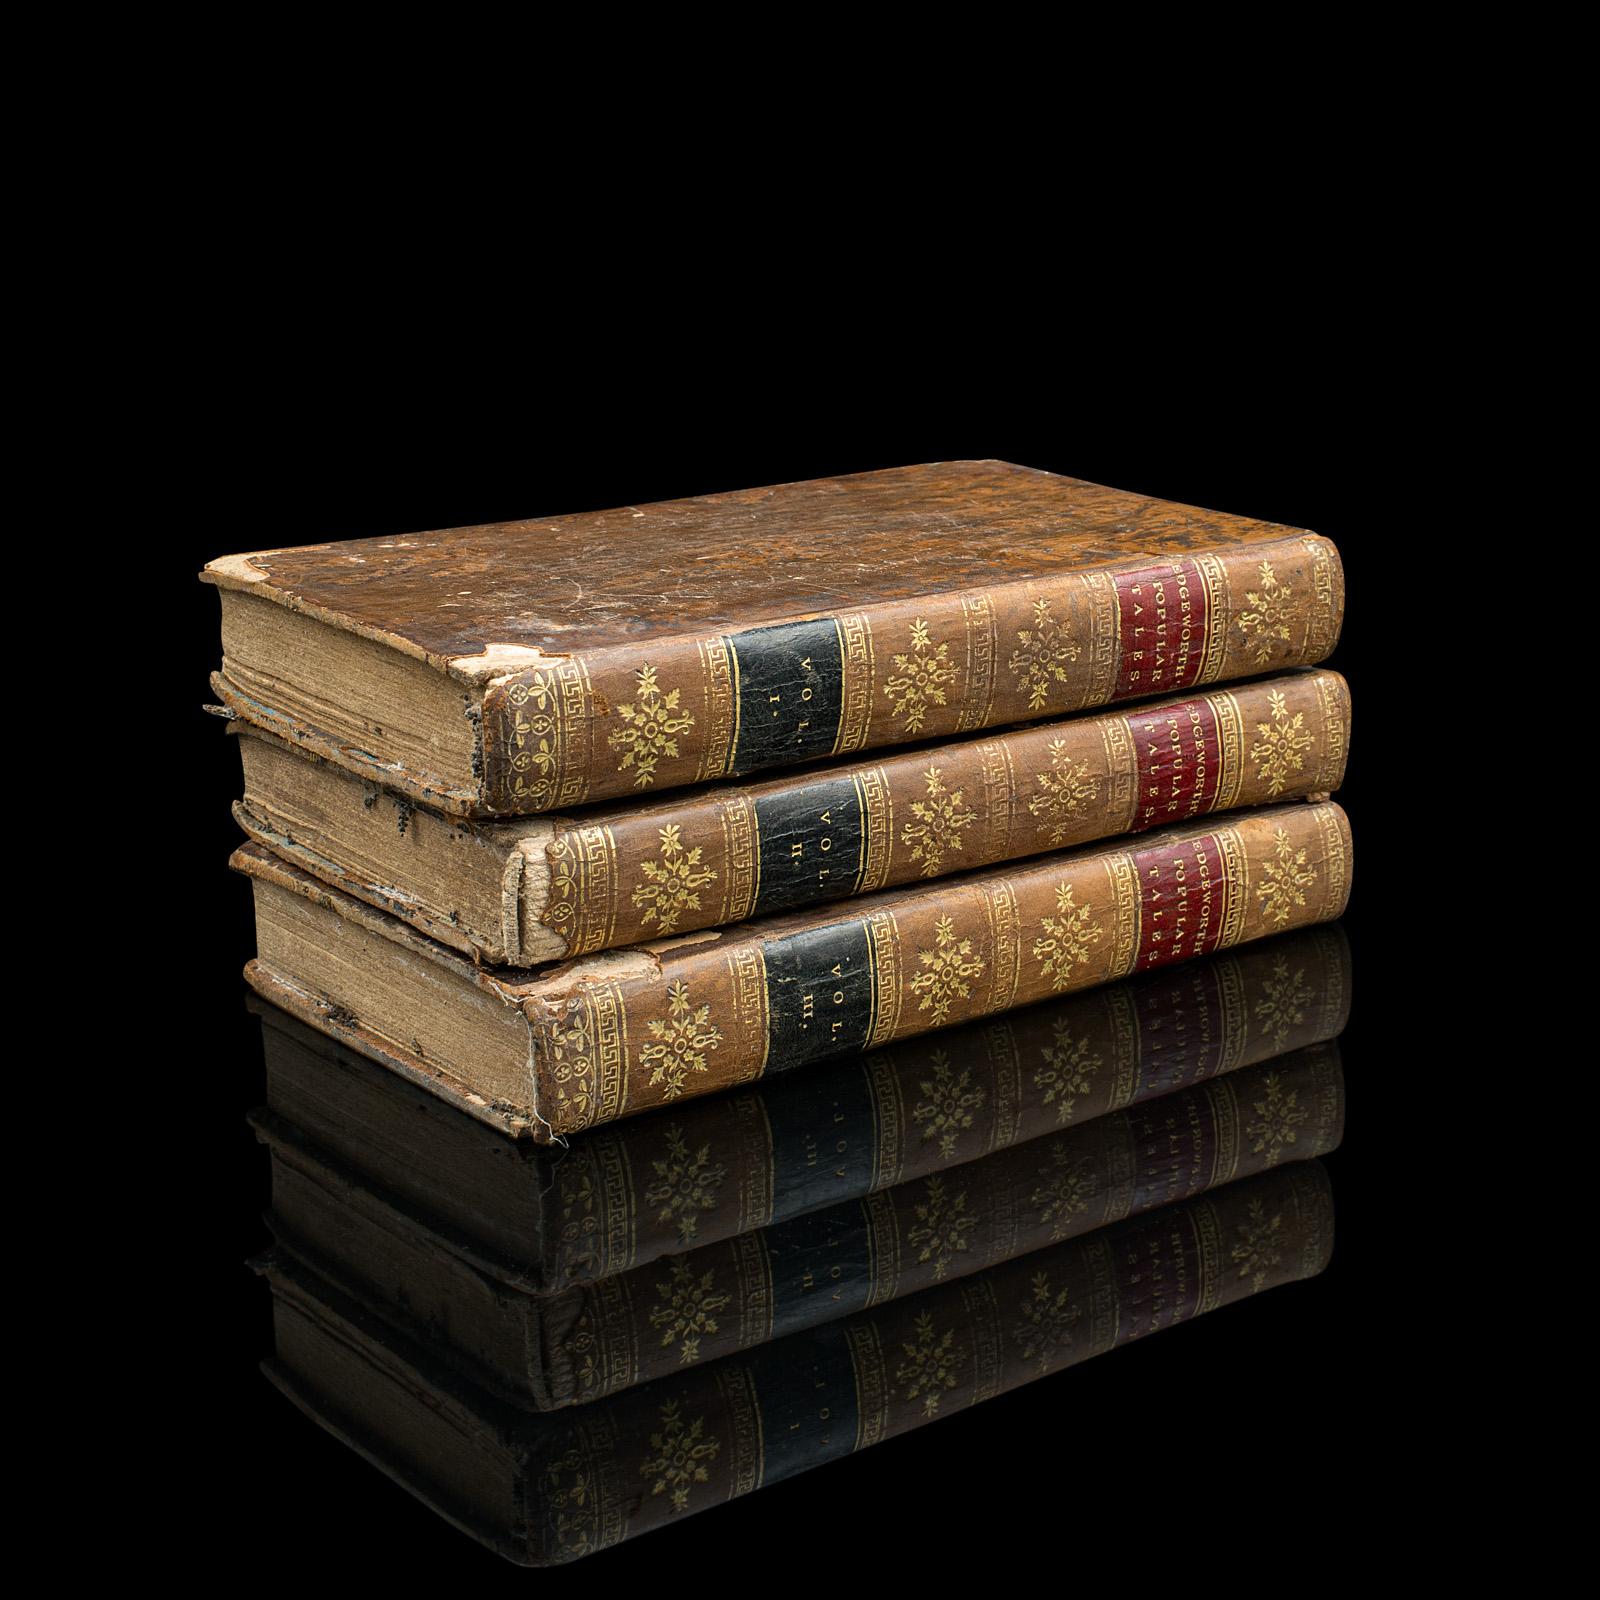 Dies ist ein Satz von 3 antiken Belletristik Bücher, Popular Tales von Maria Edgeworth. Eine englischsprachige, gebundene 3-bändige Reihe von Romanen aus der georgischen Zeit, veröffentlicht 1814.

Maria Edgeworth (1768 - 1849), eine produktive